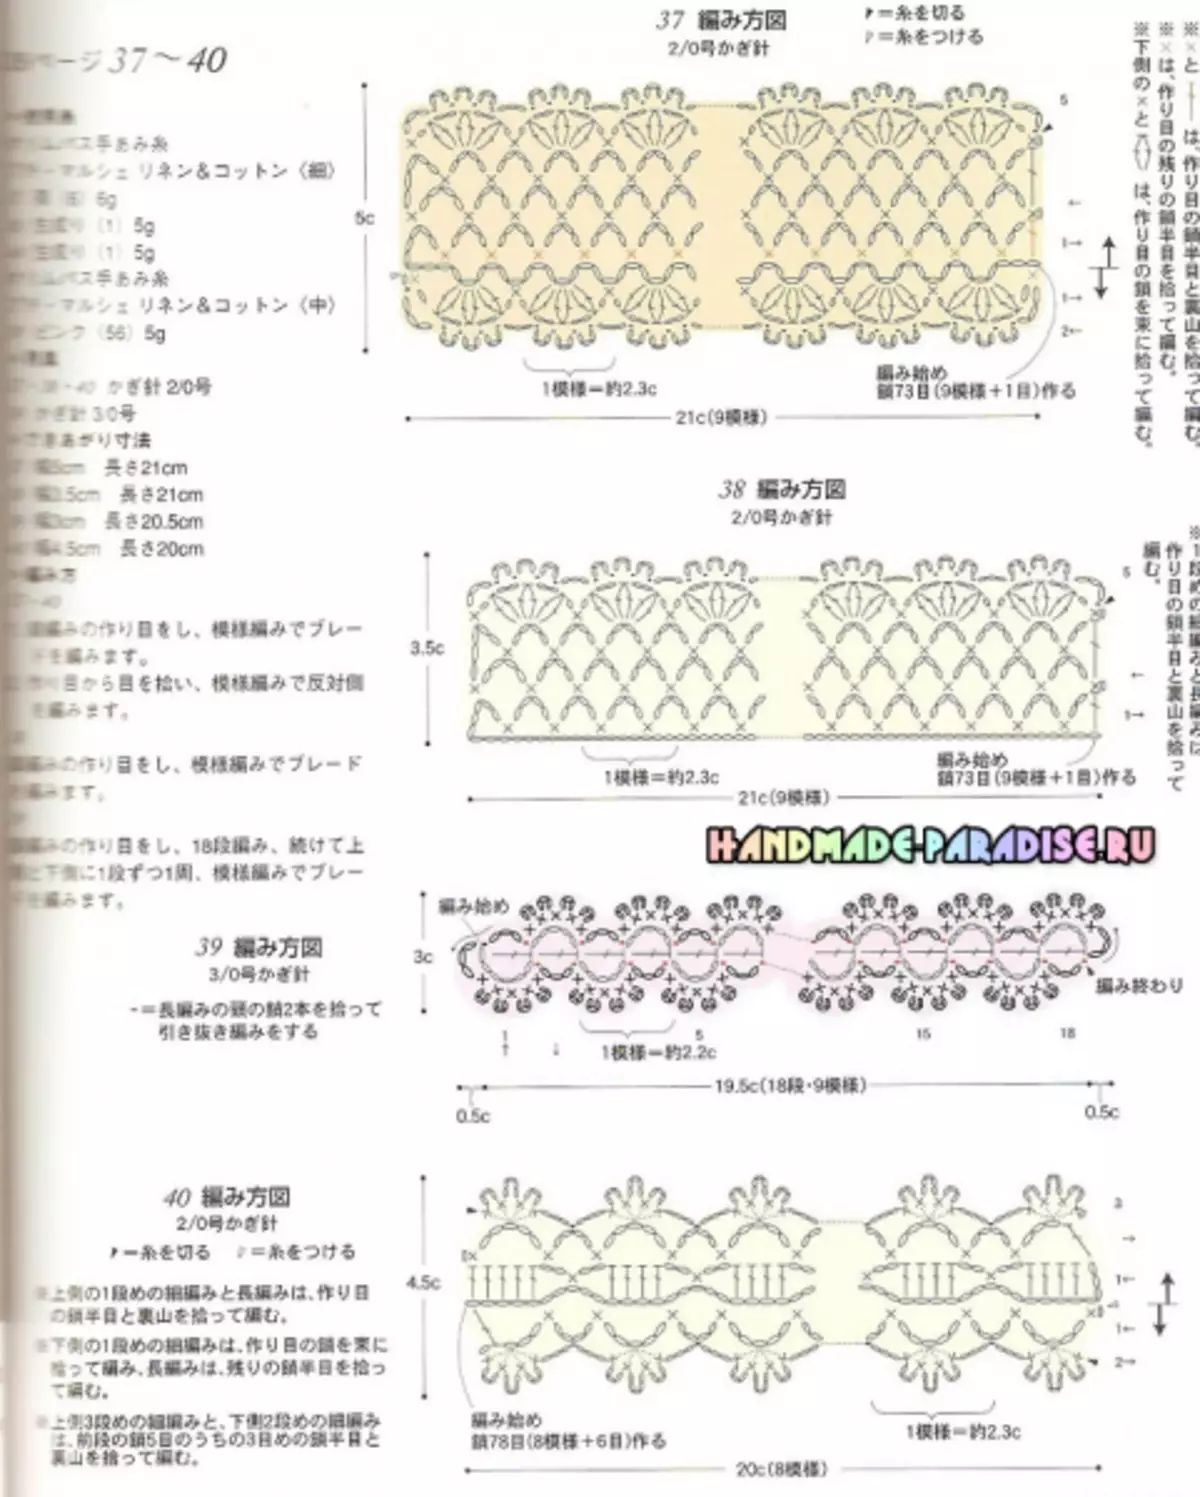 Crochet योजनाओं के साथ जापानी पत्रिका